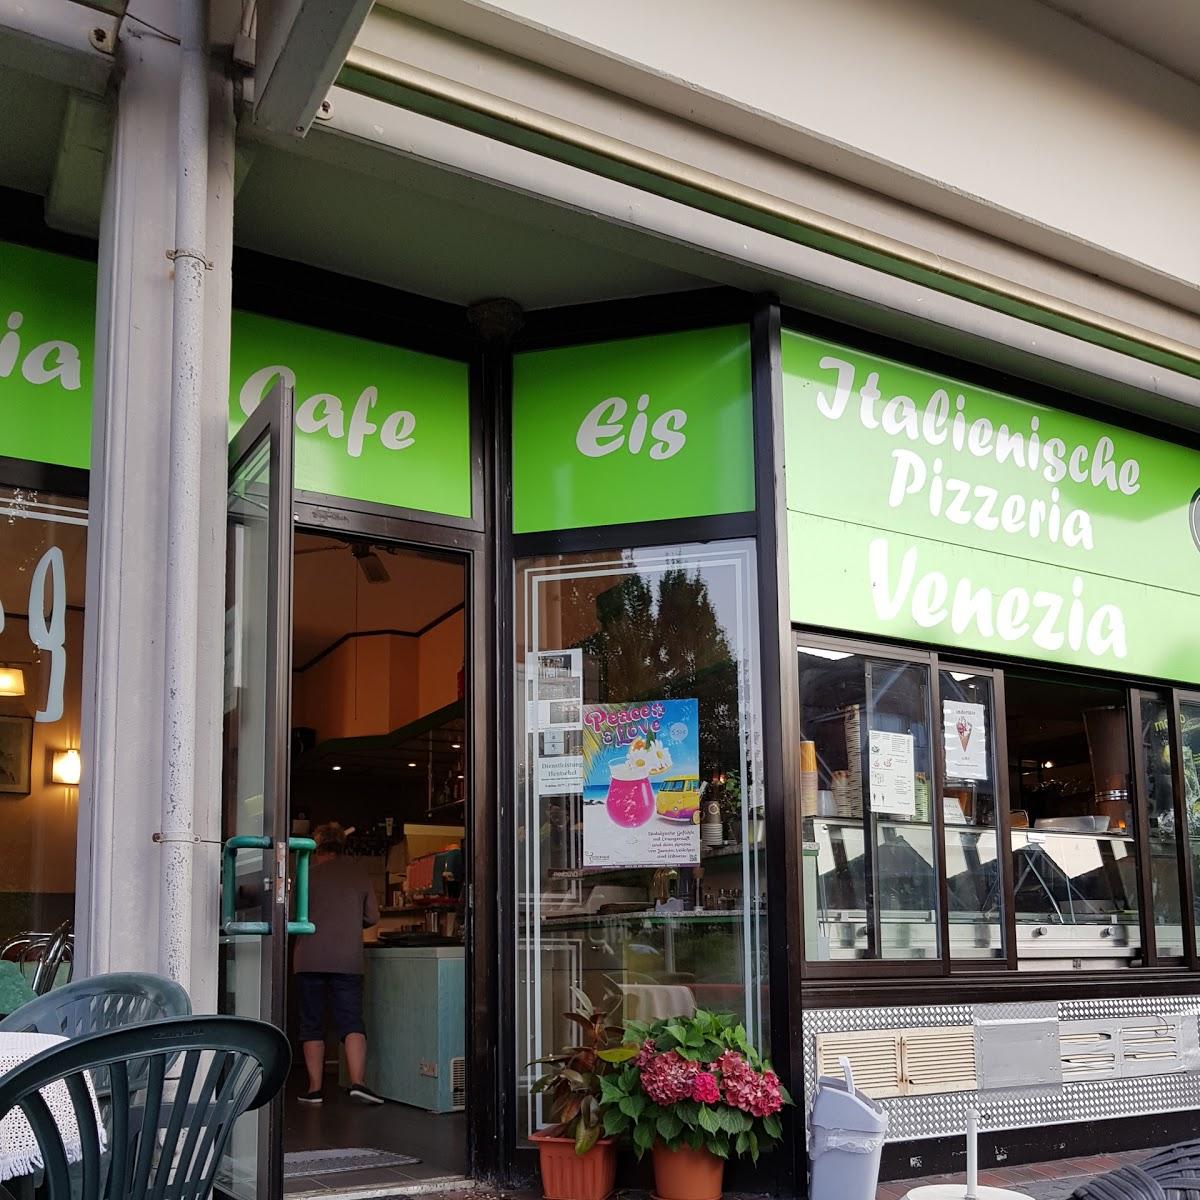 Restaurant "Eiscafe Pizzeria Venezia" in Wangerland